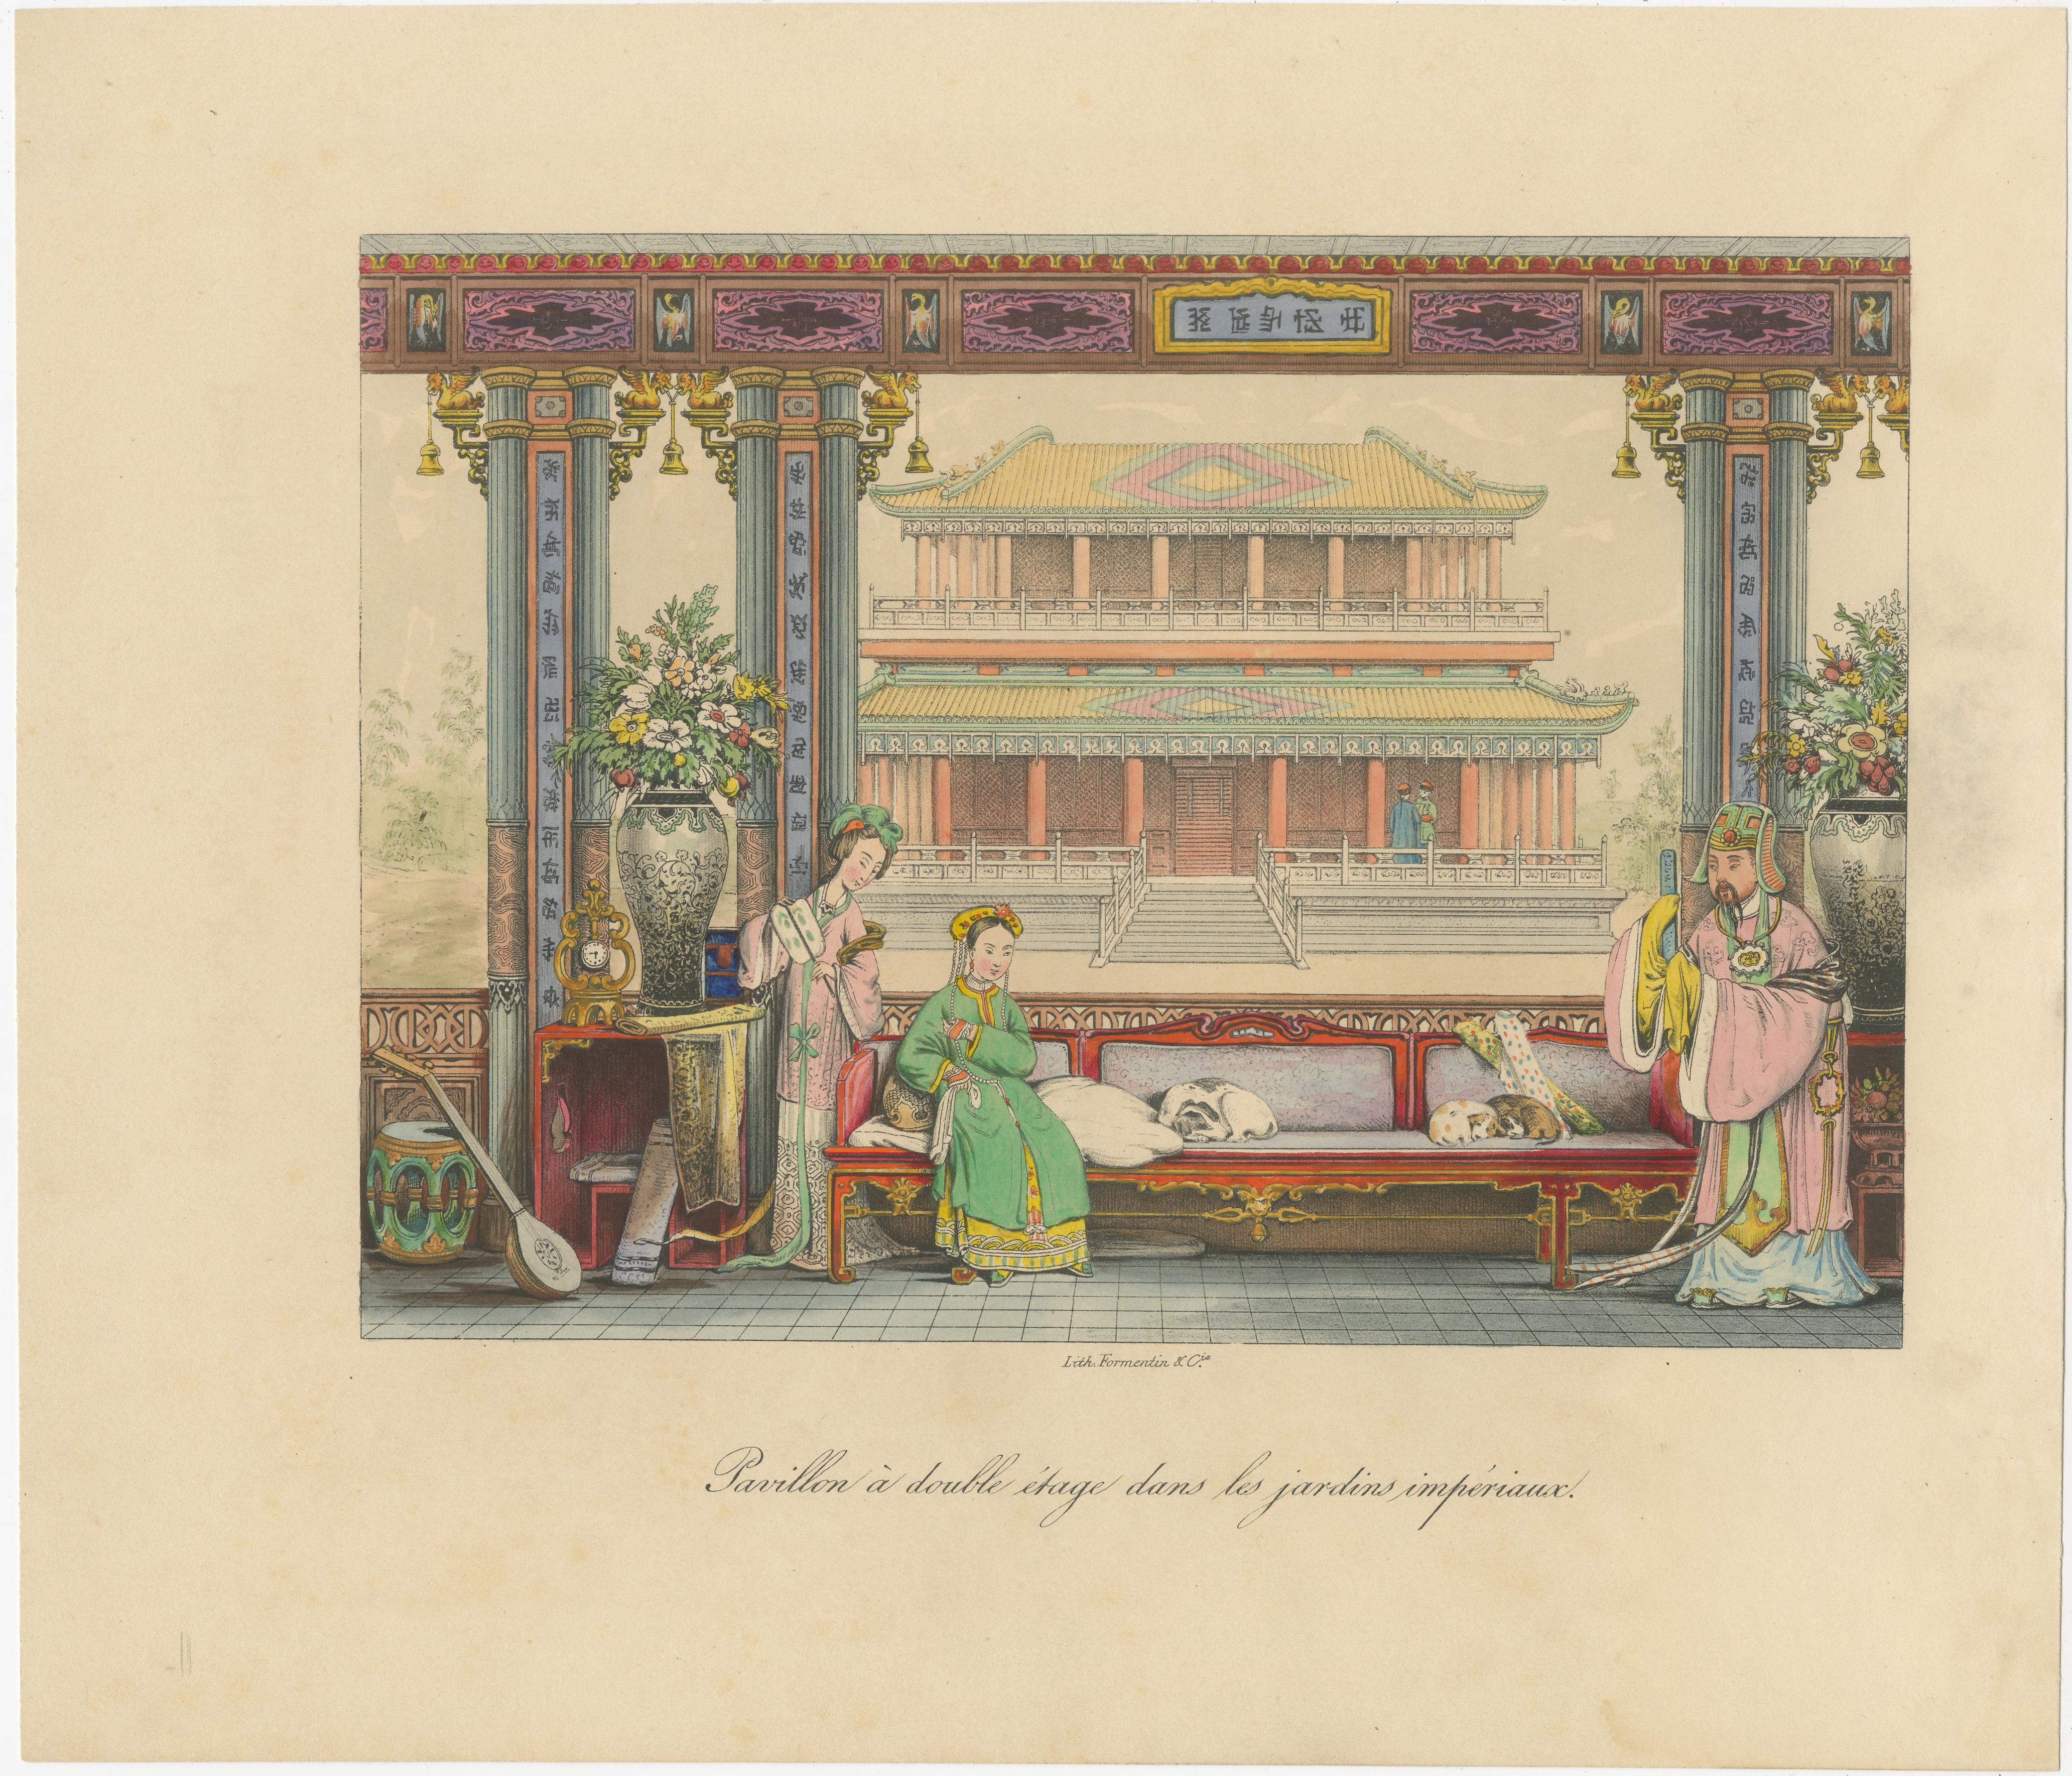 Antique print titled 'Pavillon à double étage dans les jardins impériaux'. Print of a double-storey pavilion in the imperial gardens. Published by Formentin & Cie, circa 1830.